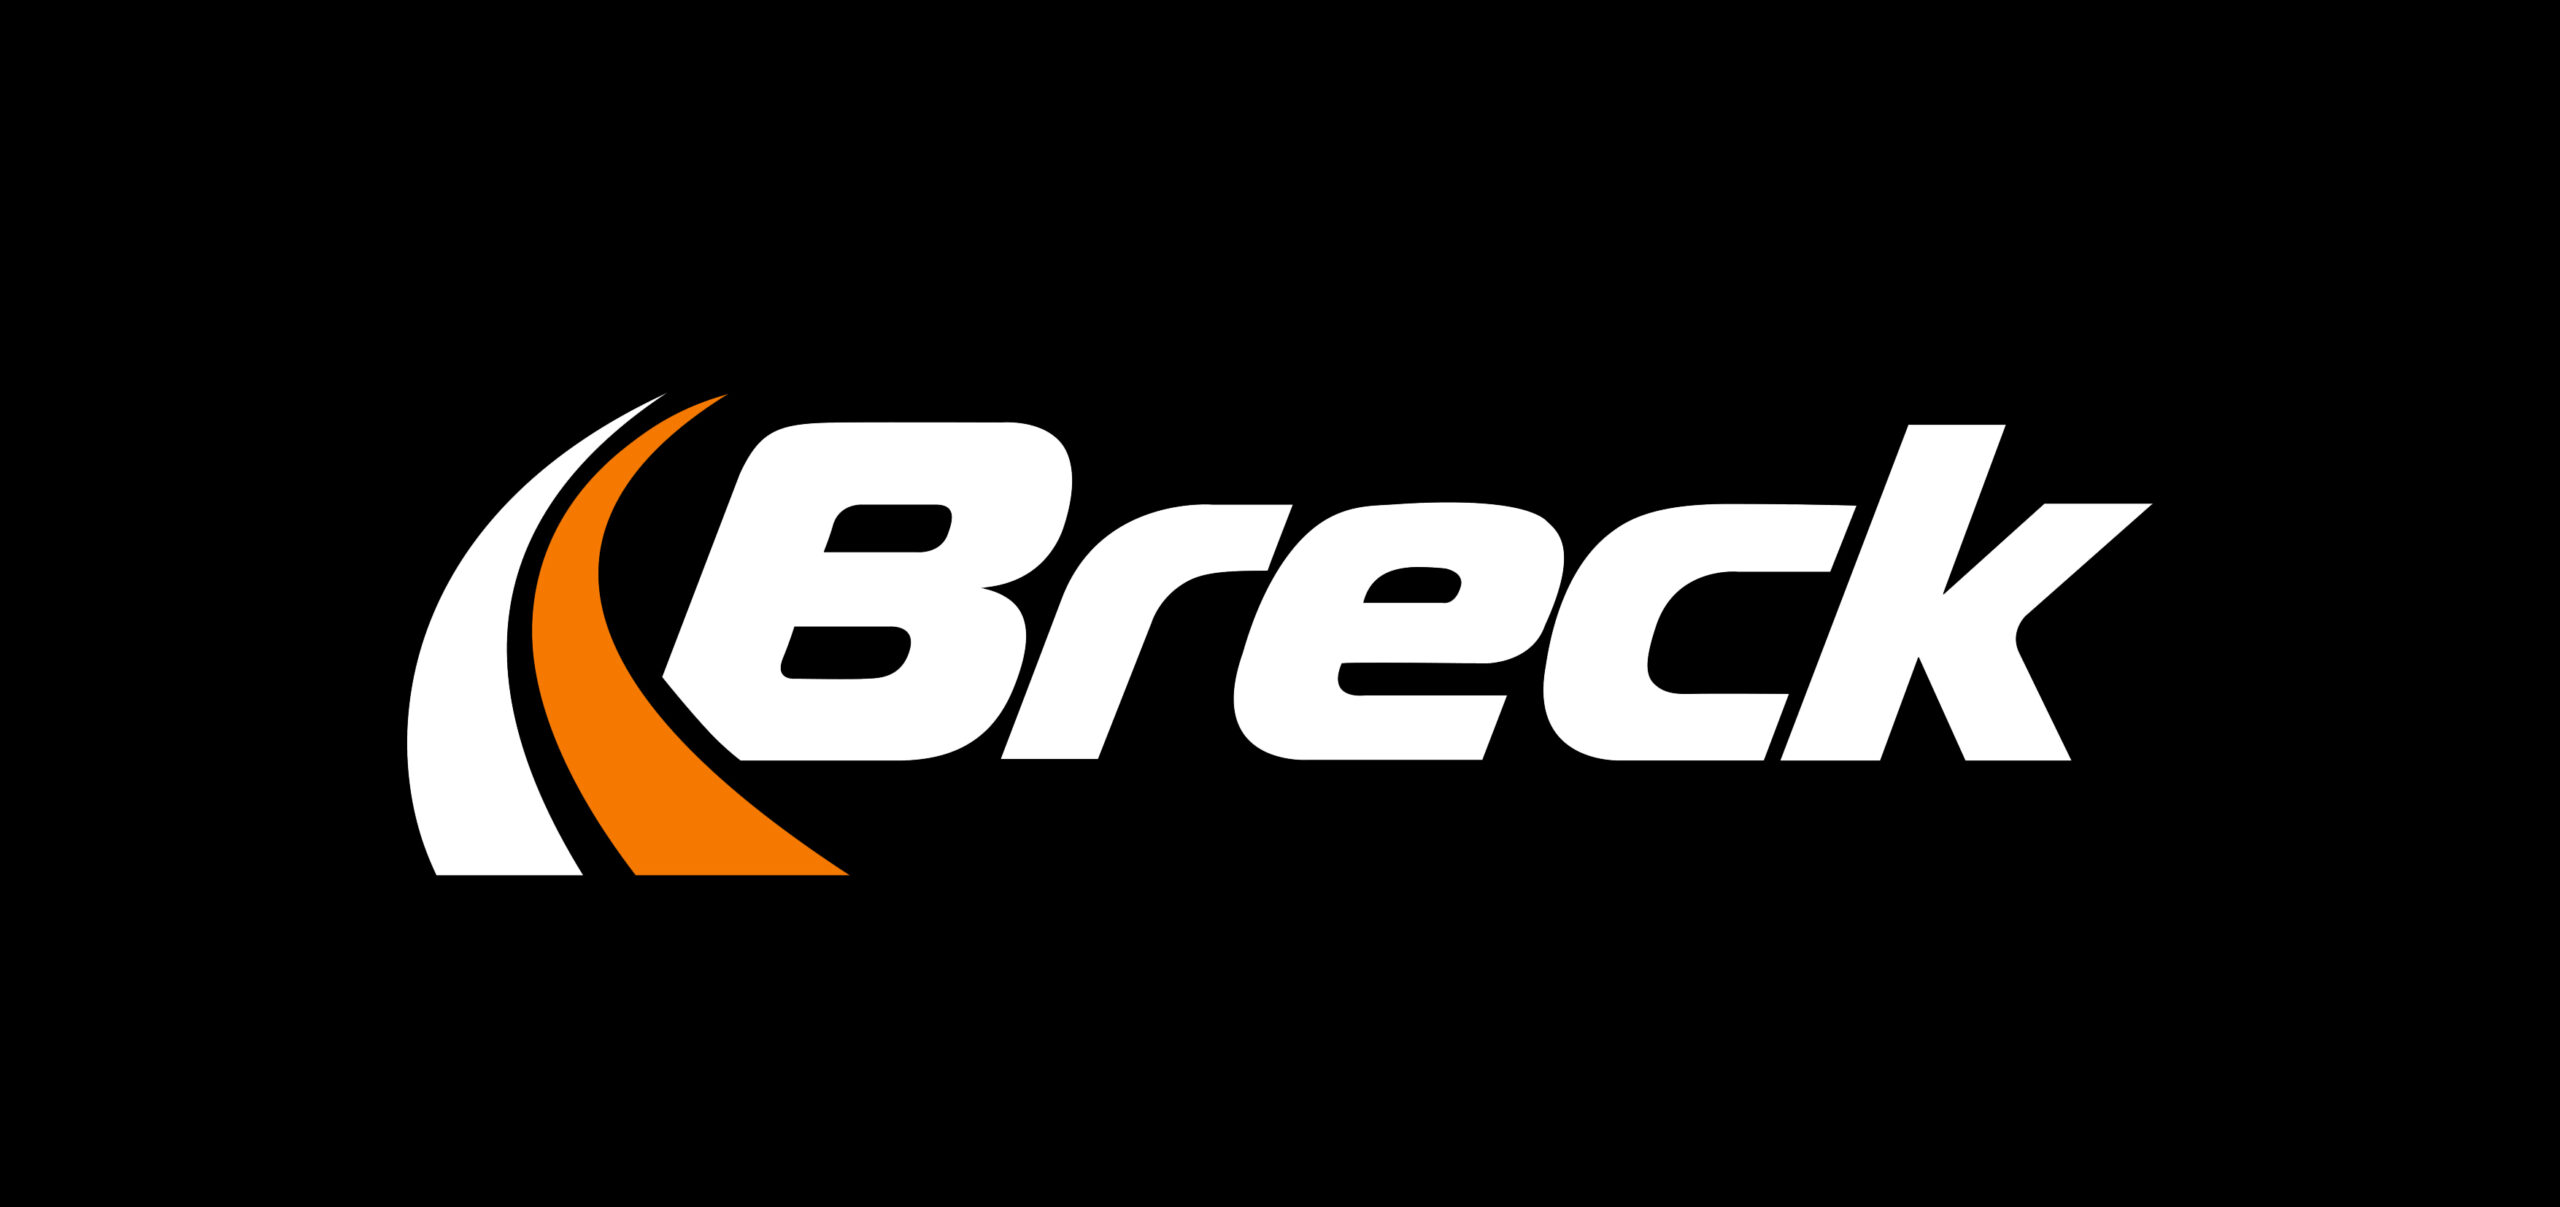 Safety-aware Breck – Breck – klocki hamulcowe do samochodów osobowych.  Producent hamulców